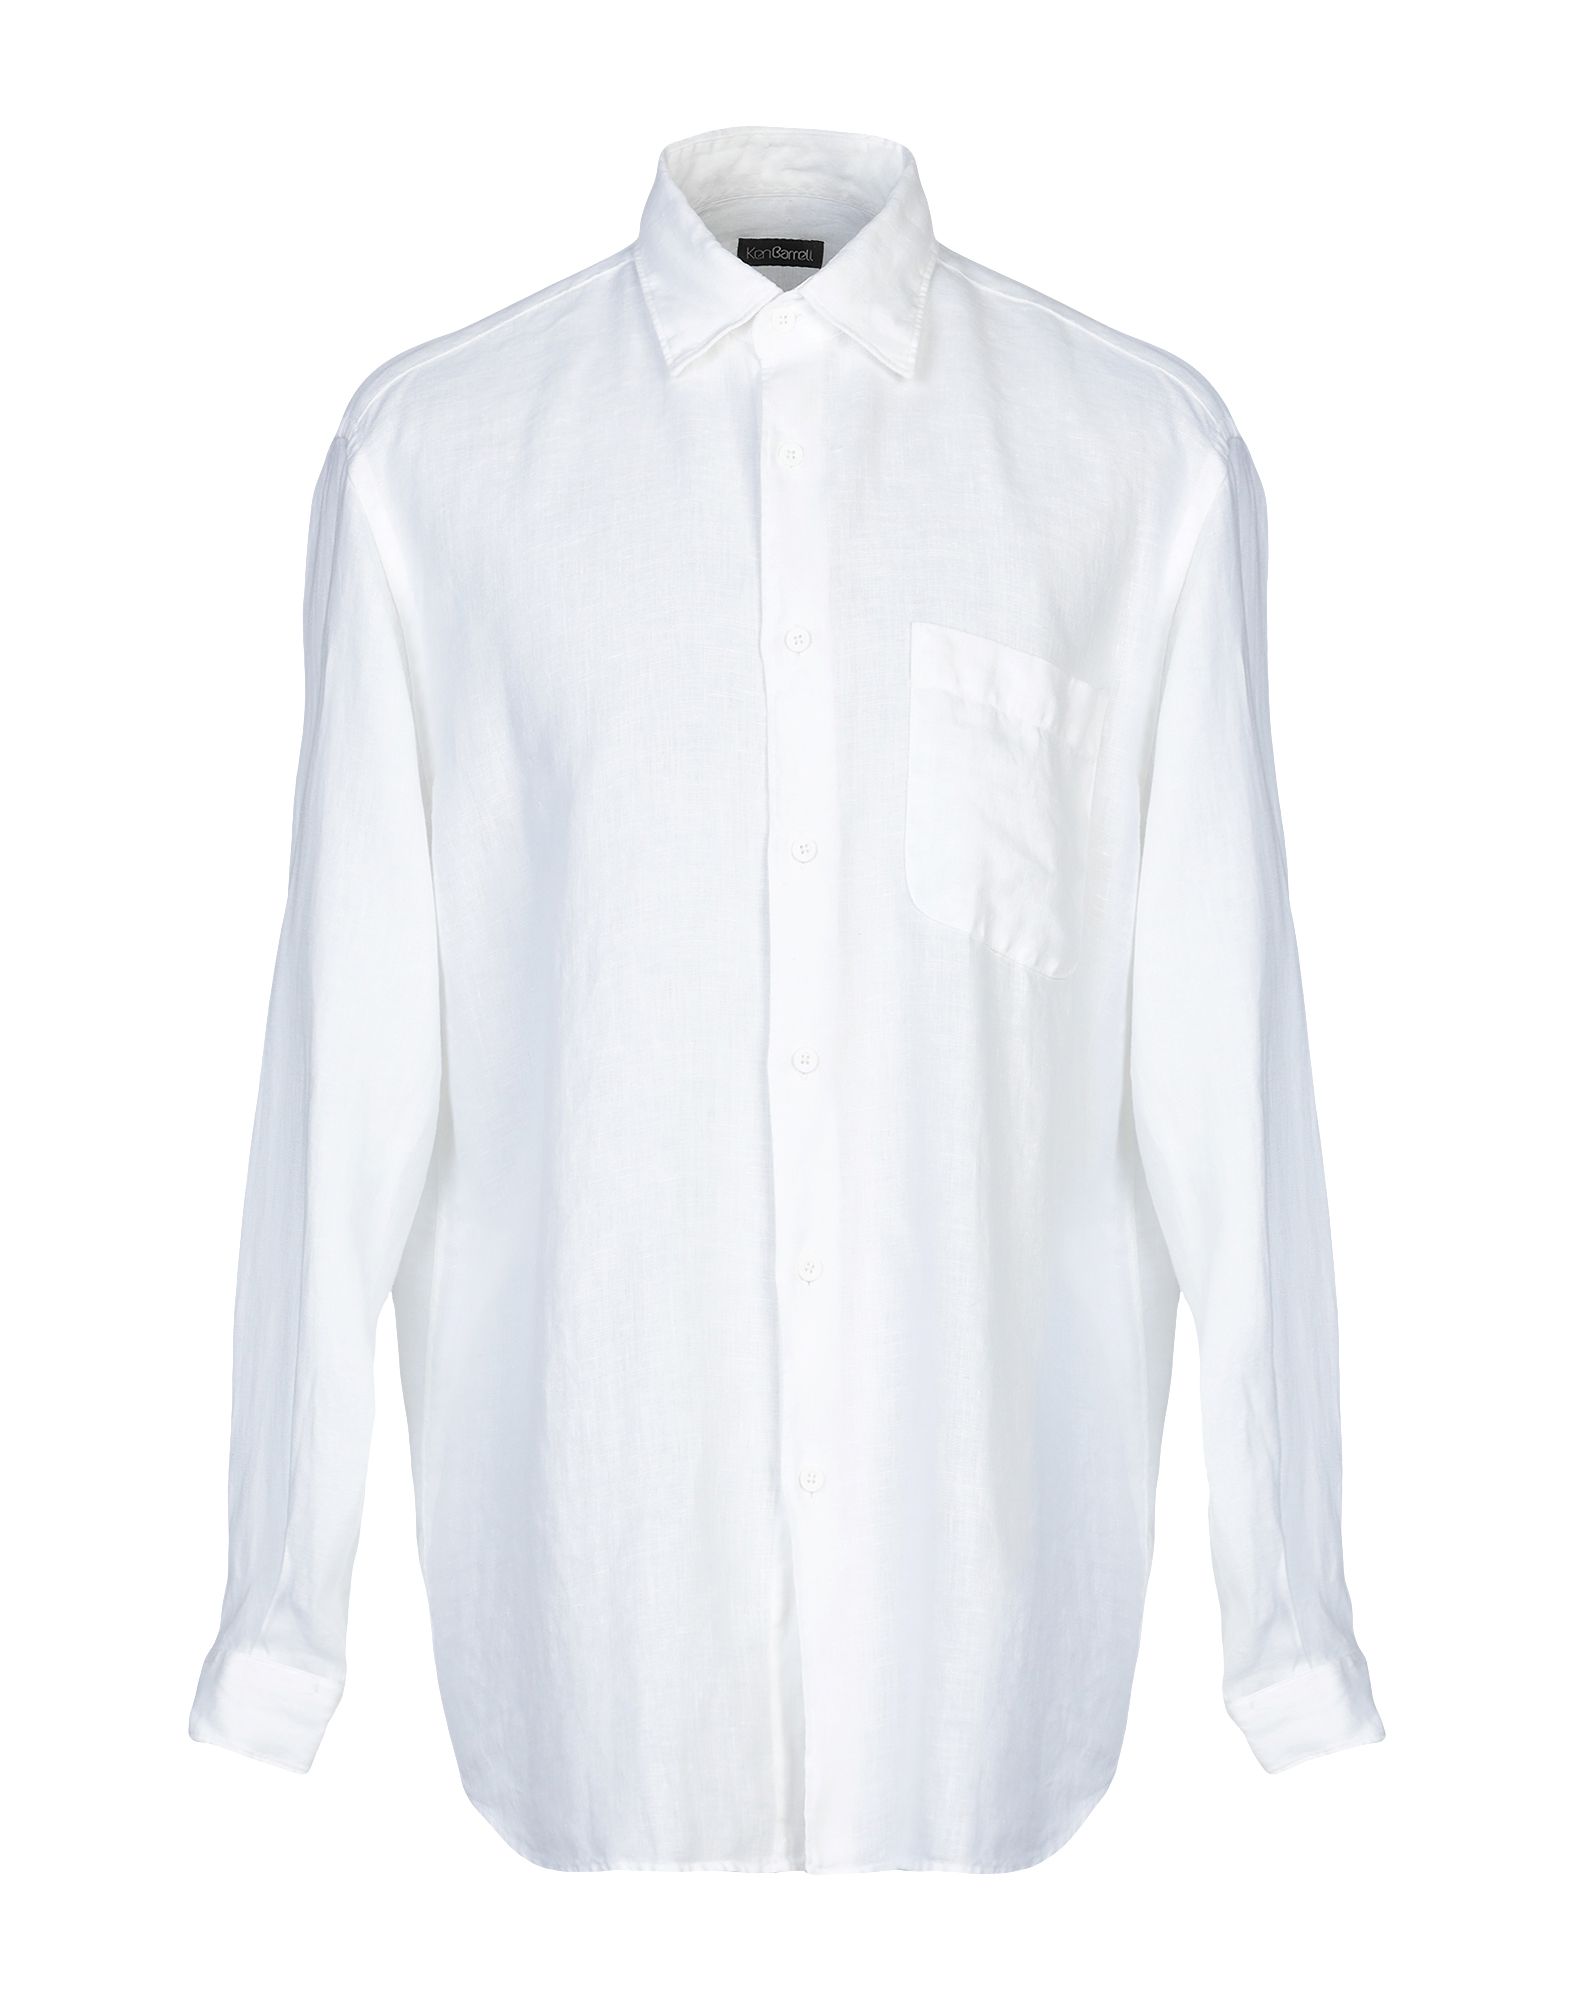 《送料無料》KEN BARRELL メンズ シャツ ホワイト XL 麻 100%